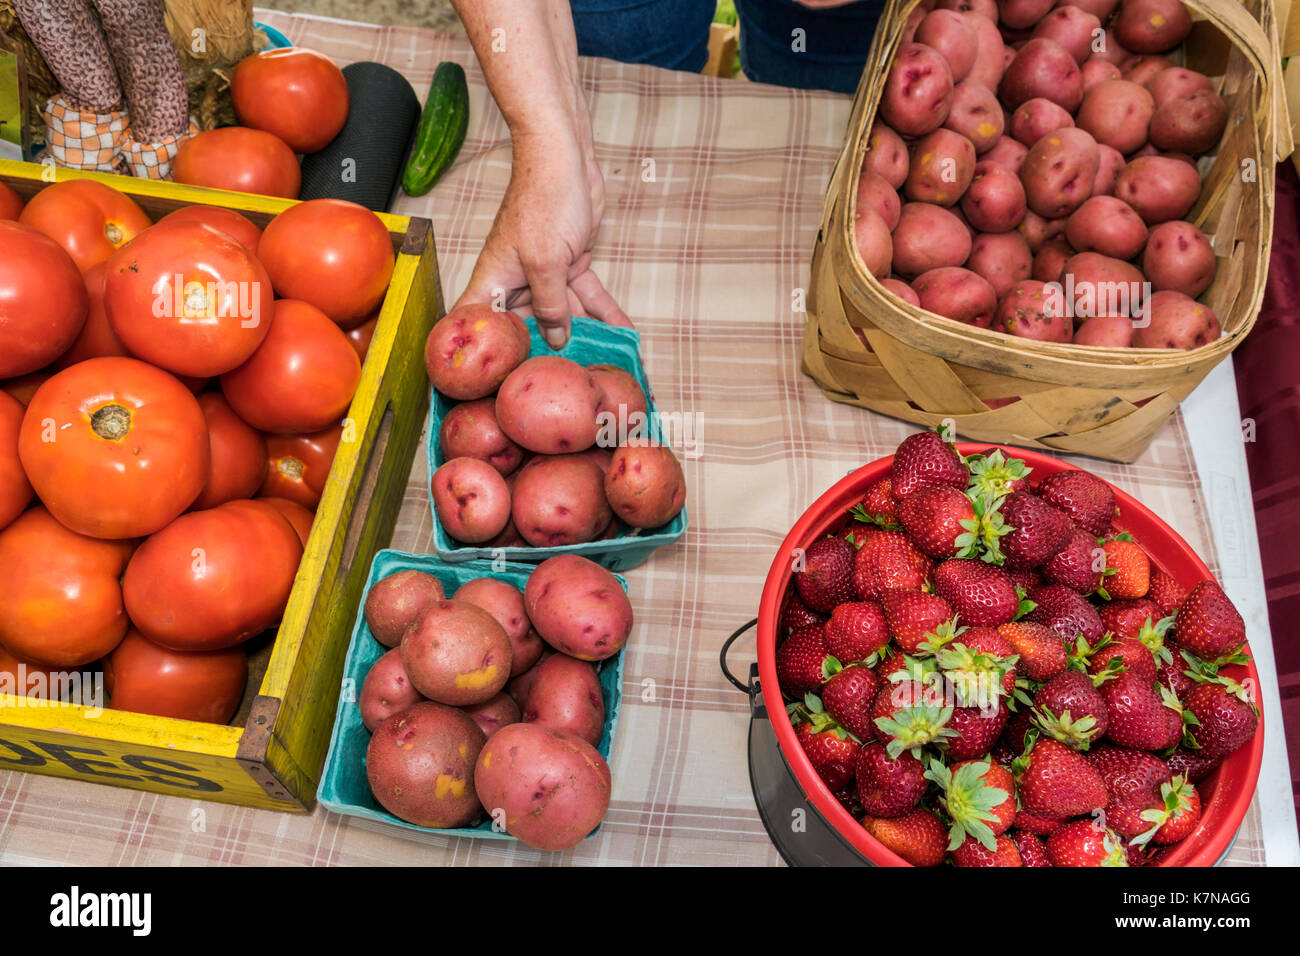 Caroline du Sud,North Myrtle Beach,Little River Farmers Market,fruits,légumes,pommes de terre,fraises,tomates,SC170516187 Banque D'Images